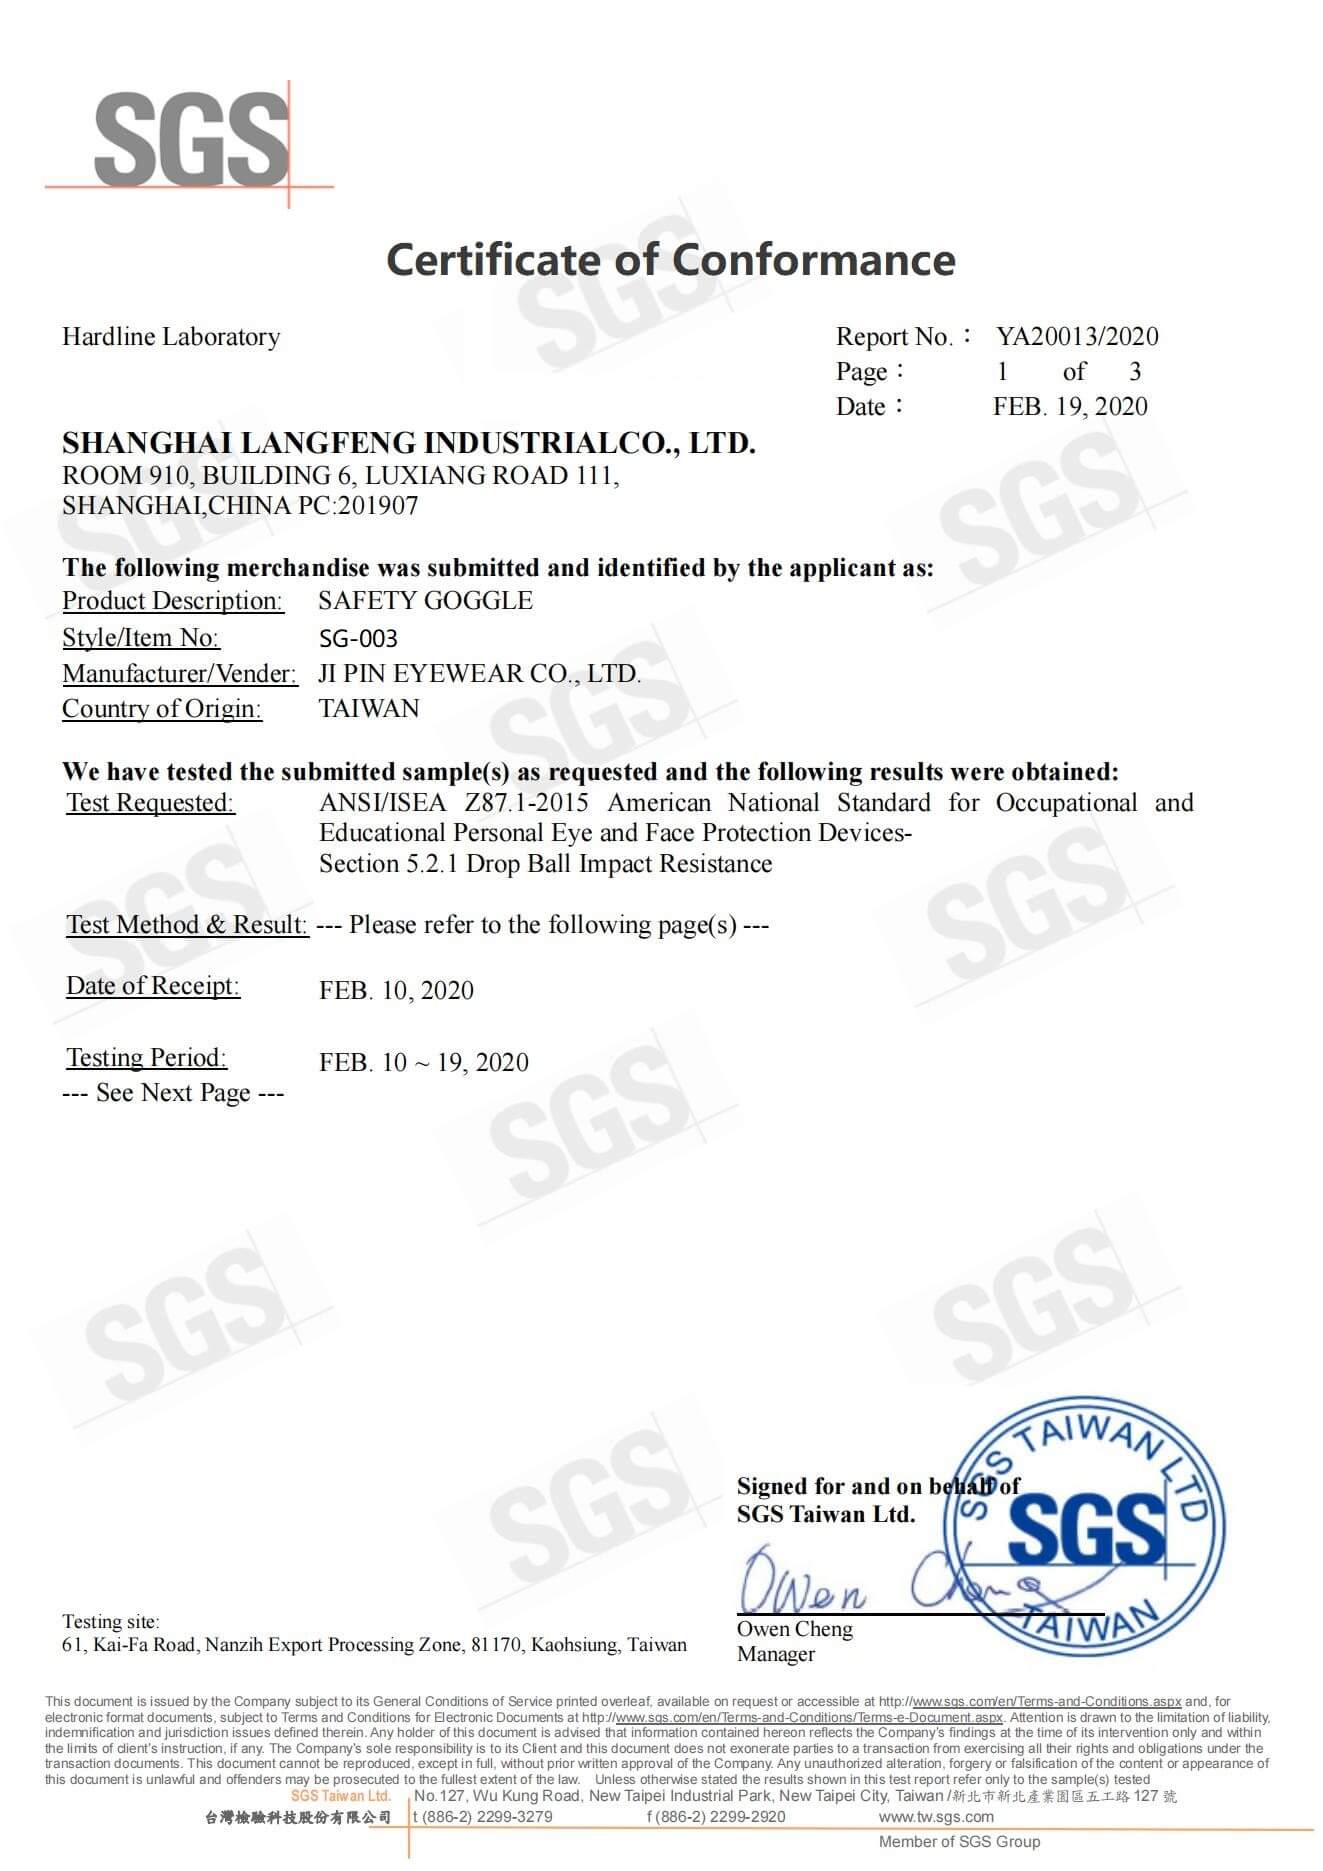 SG003美标ANSI测试证书 正本_00 (1)